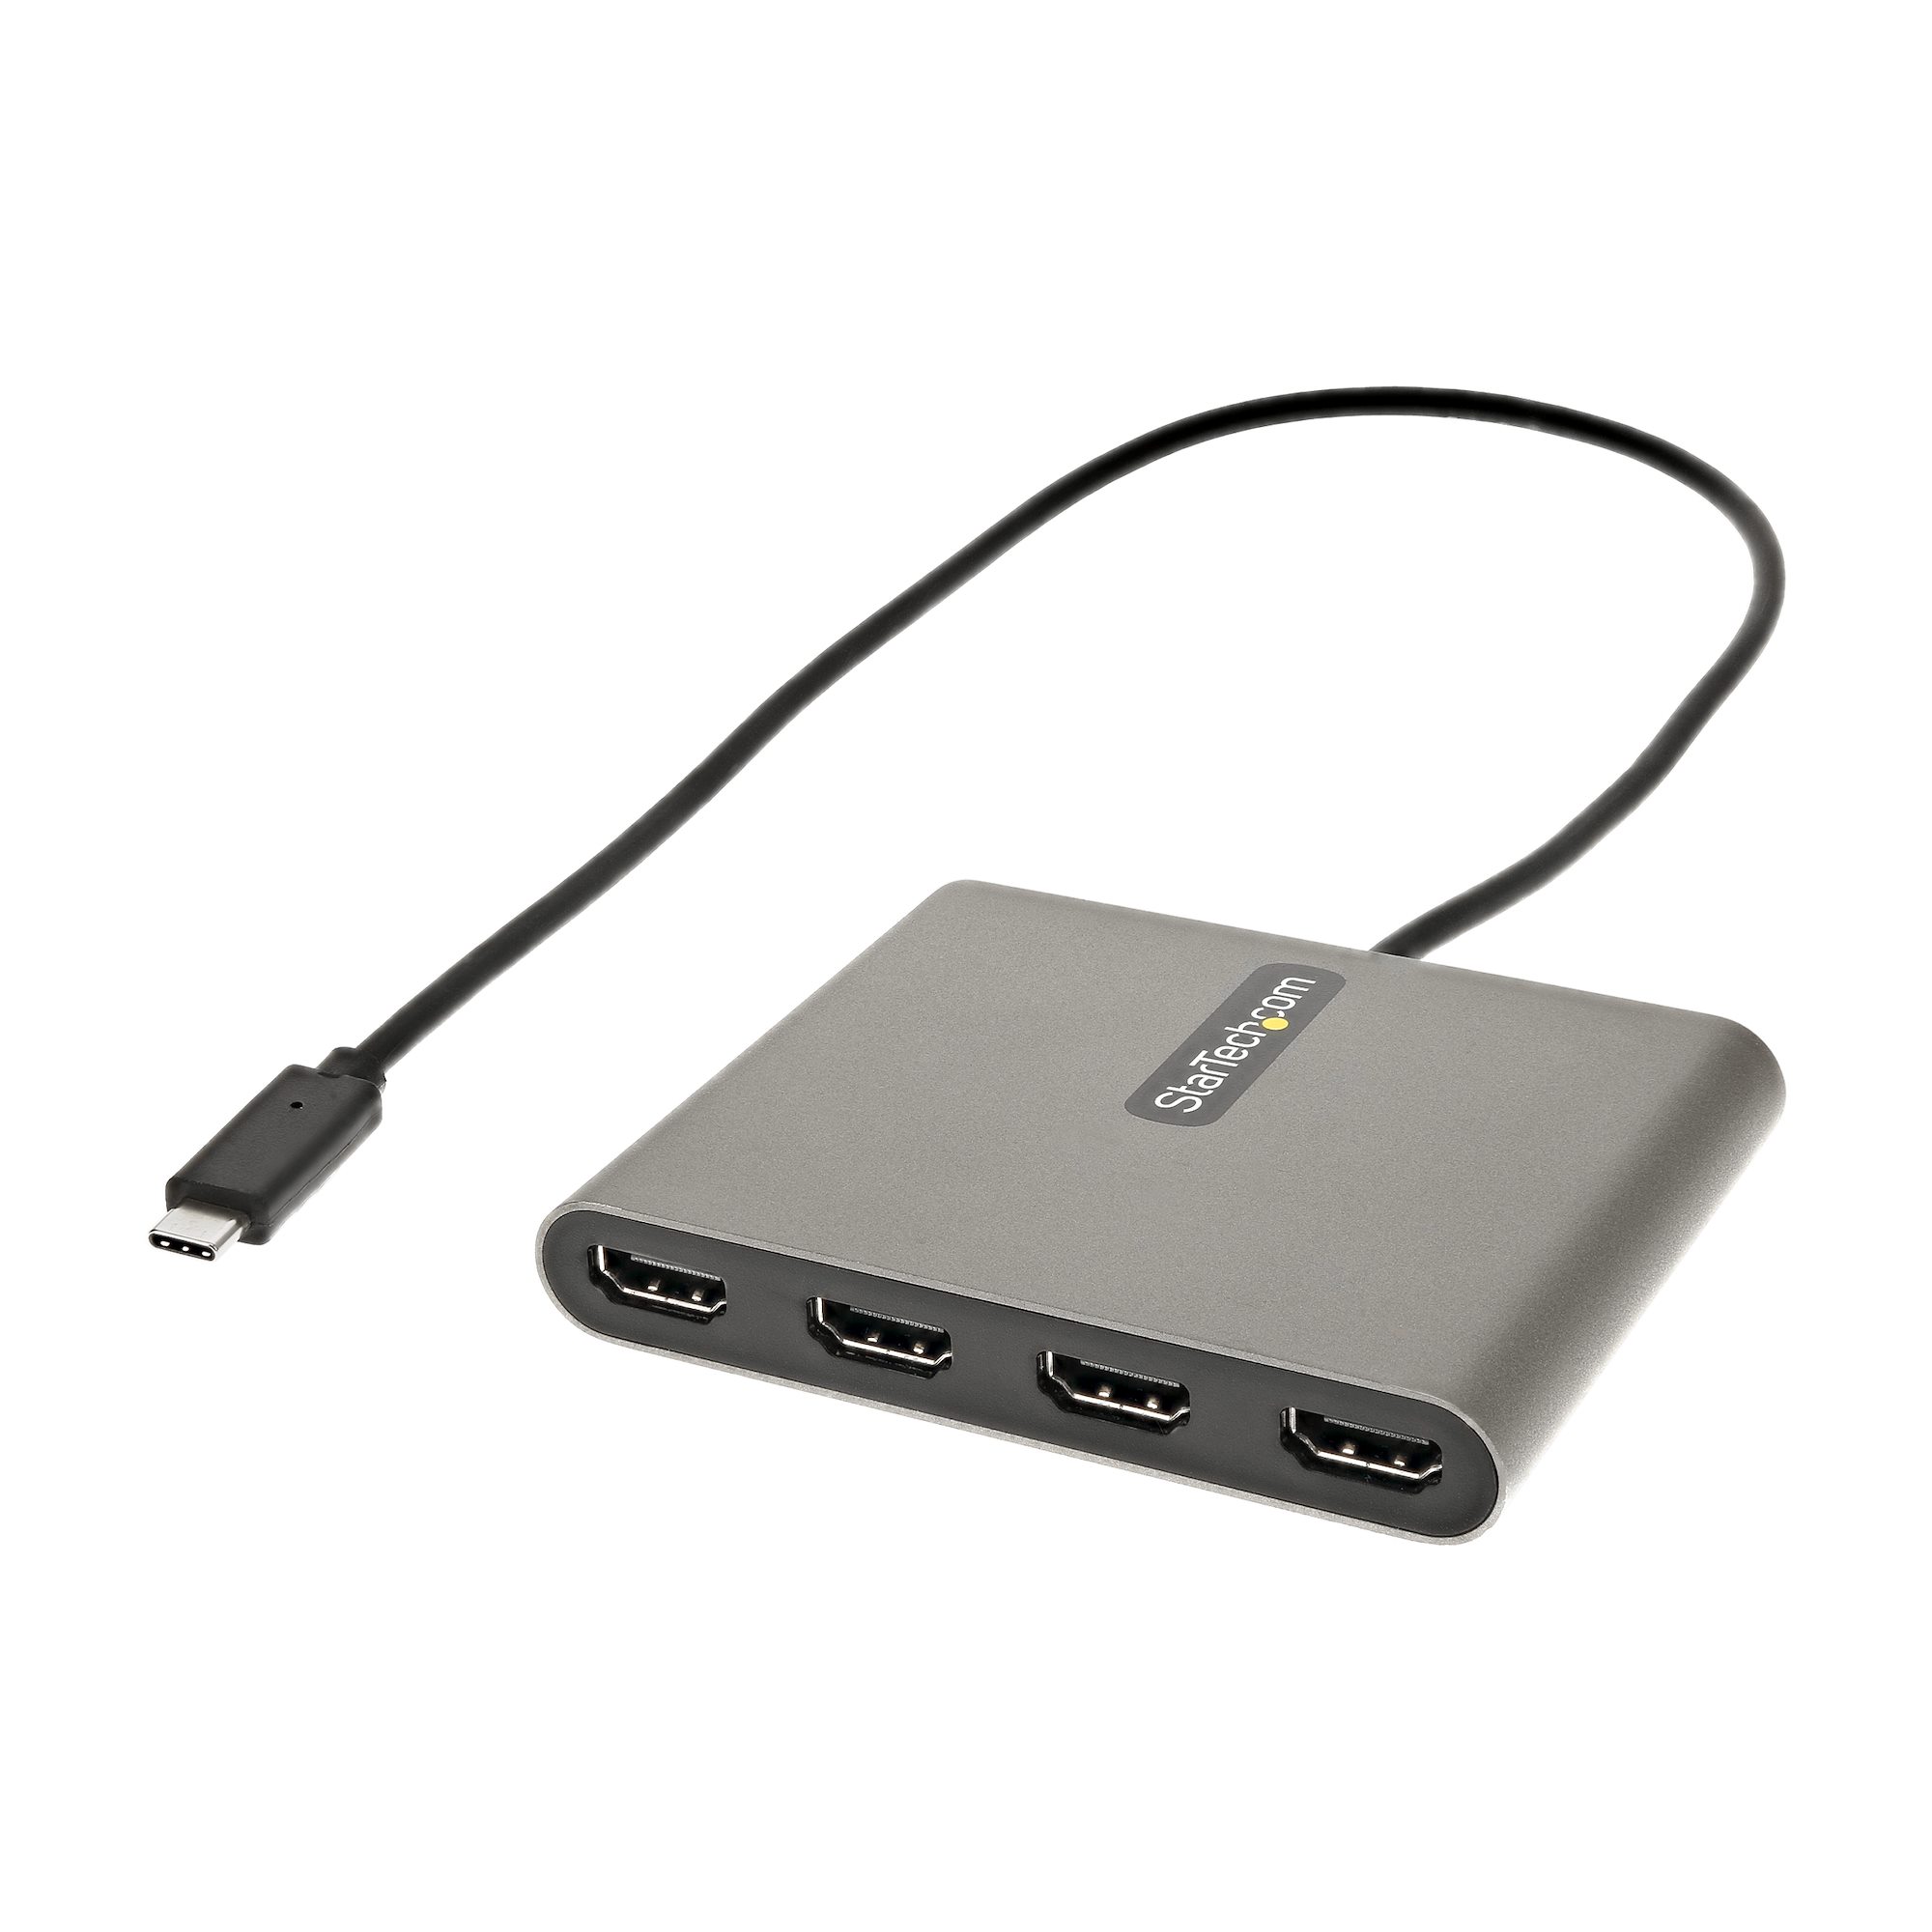 【USBC2HD4】USB C TO 4X HDMI ADAPTER- 1080P